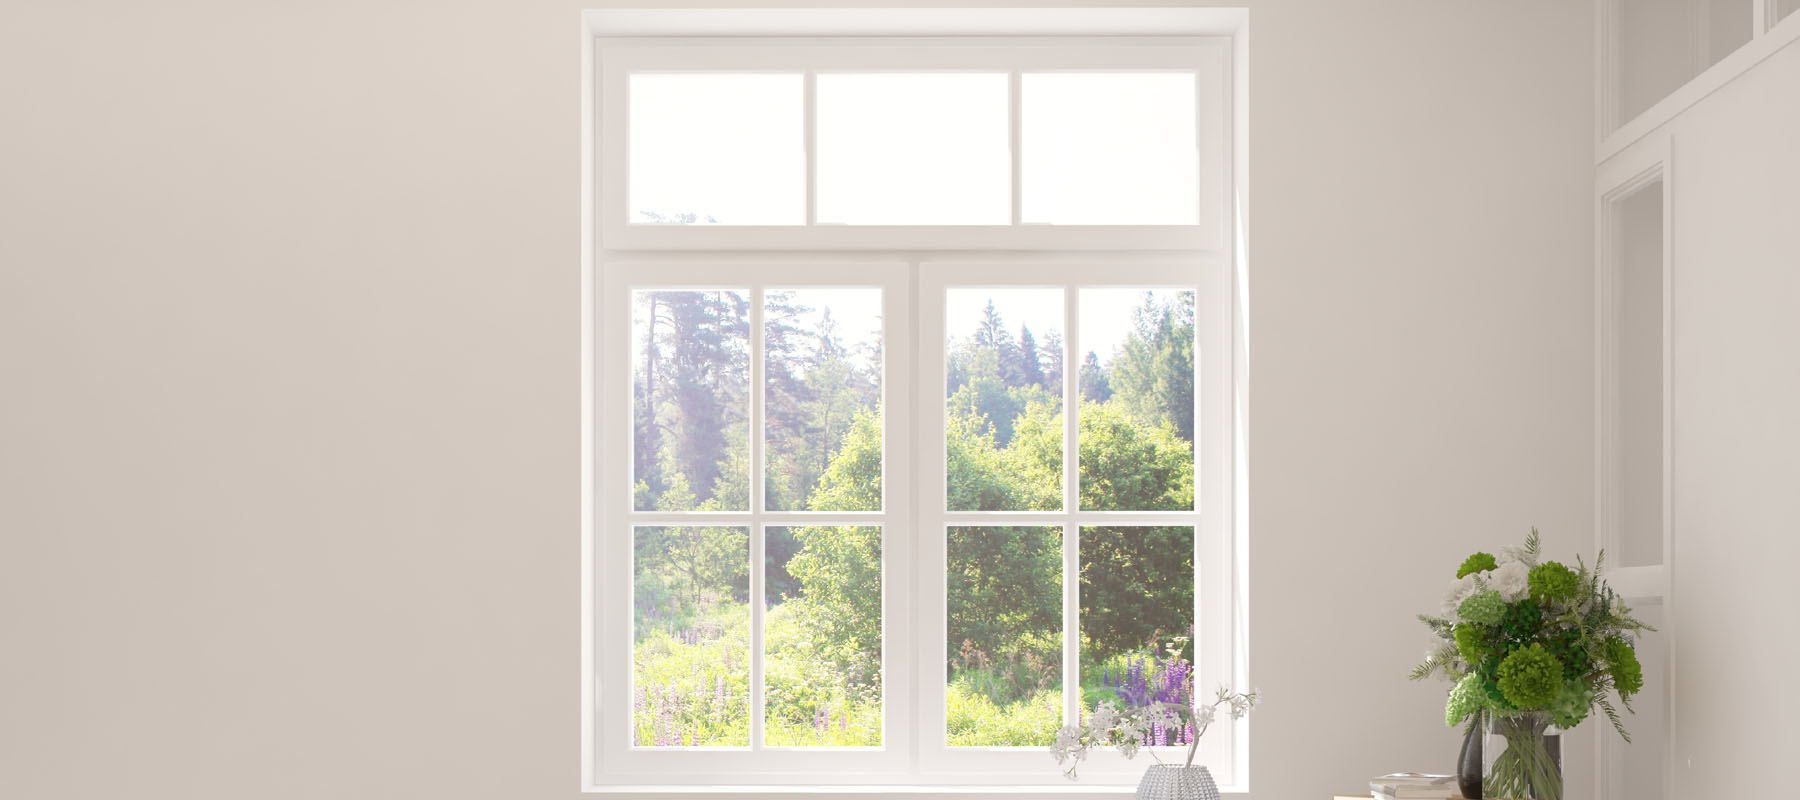 Le vitrage anti-effraction est-il indispensable pour vos fenêtres ?